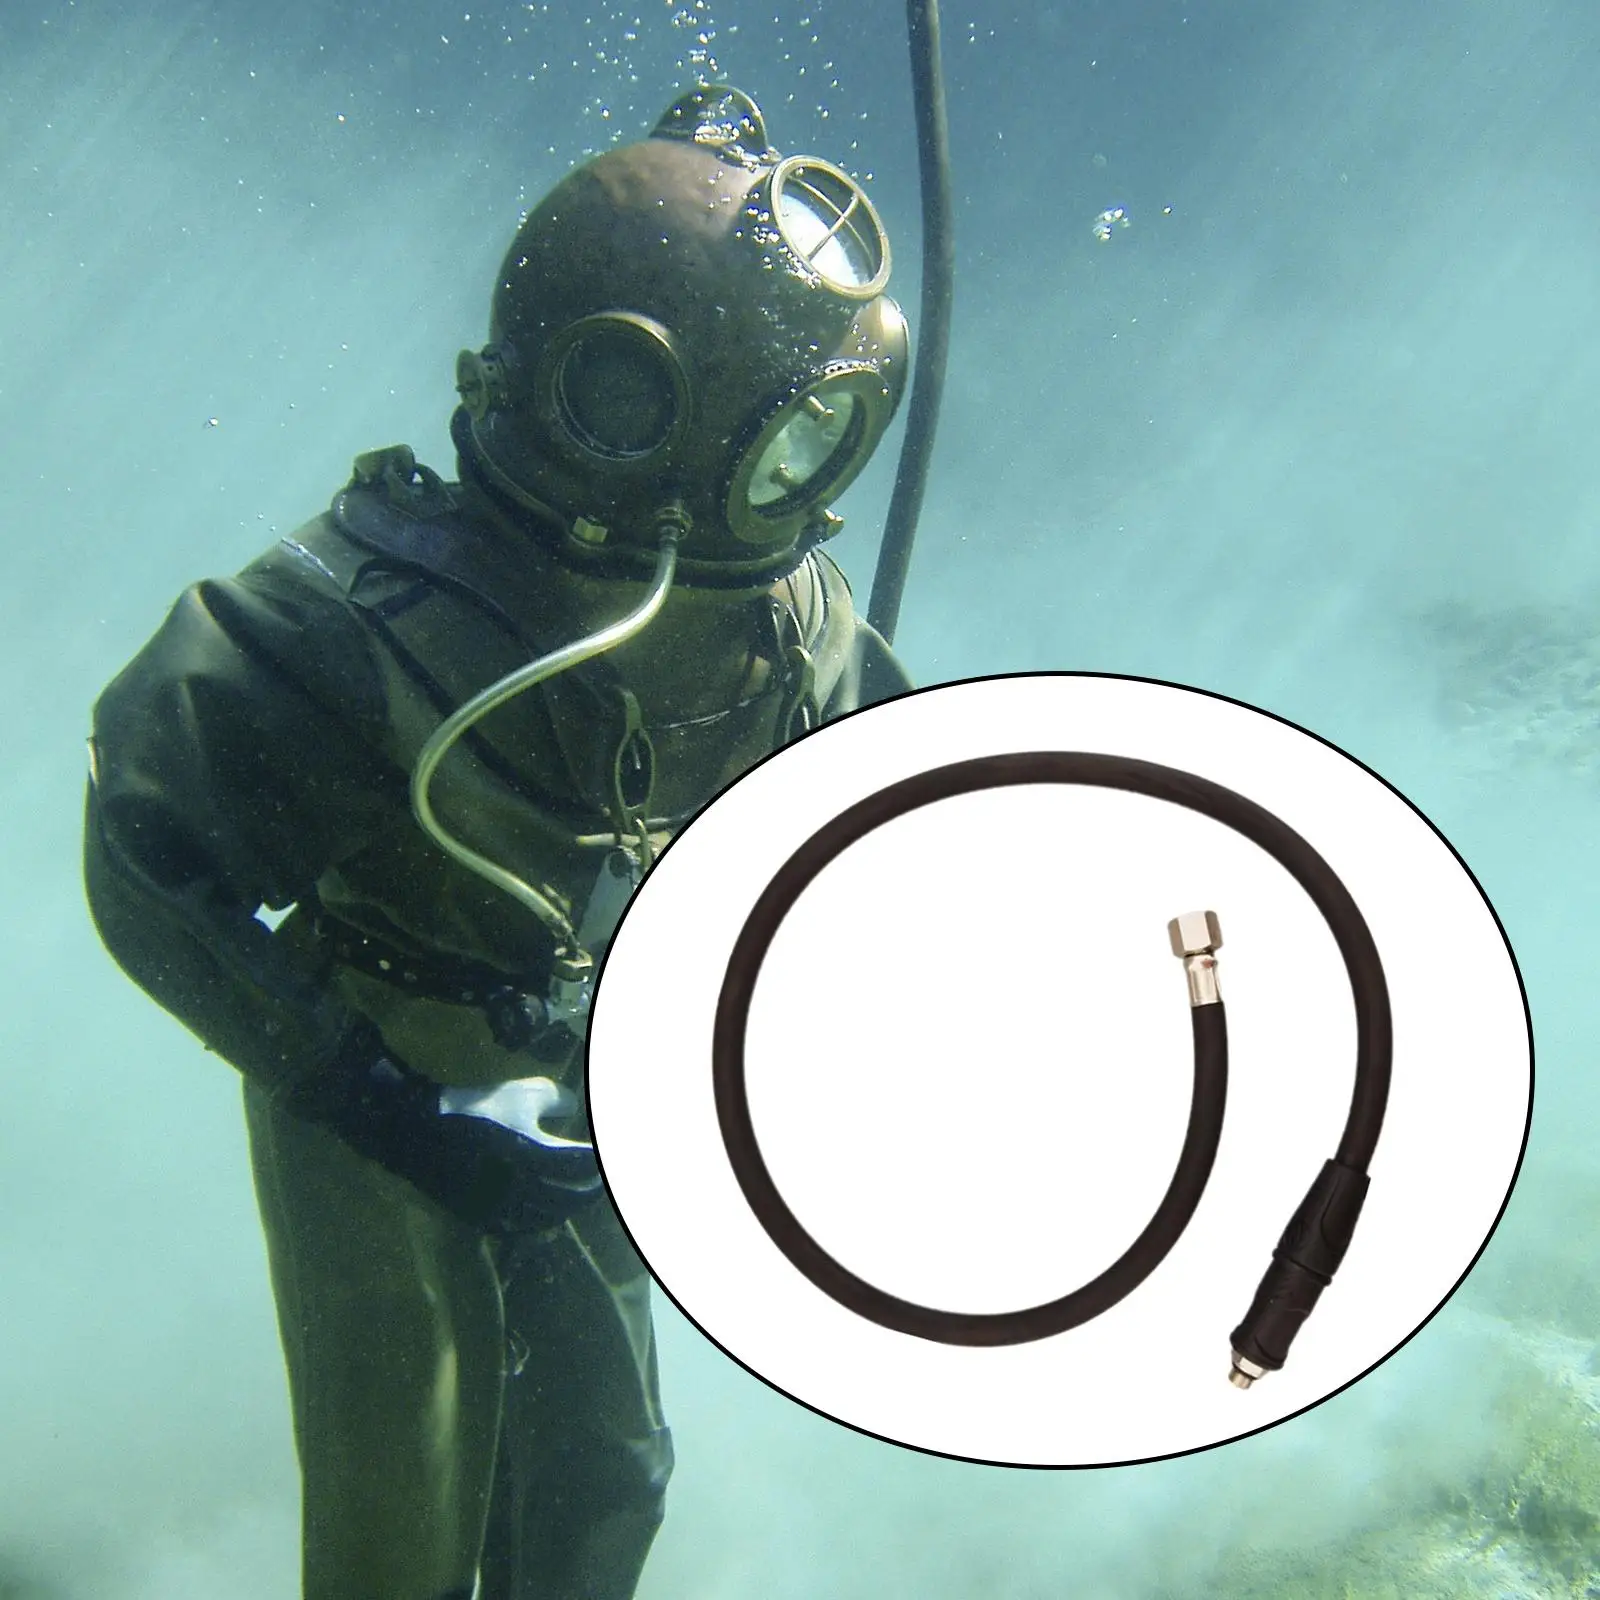 

Шланг для подводного плавания среднего давления для регулятора 2-го этапа для стандартного BCD